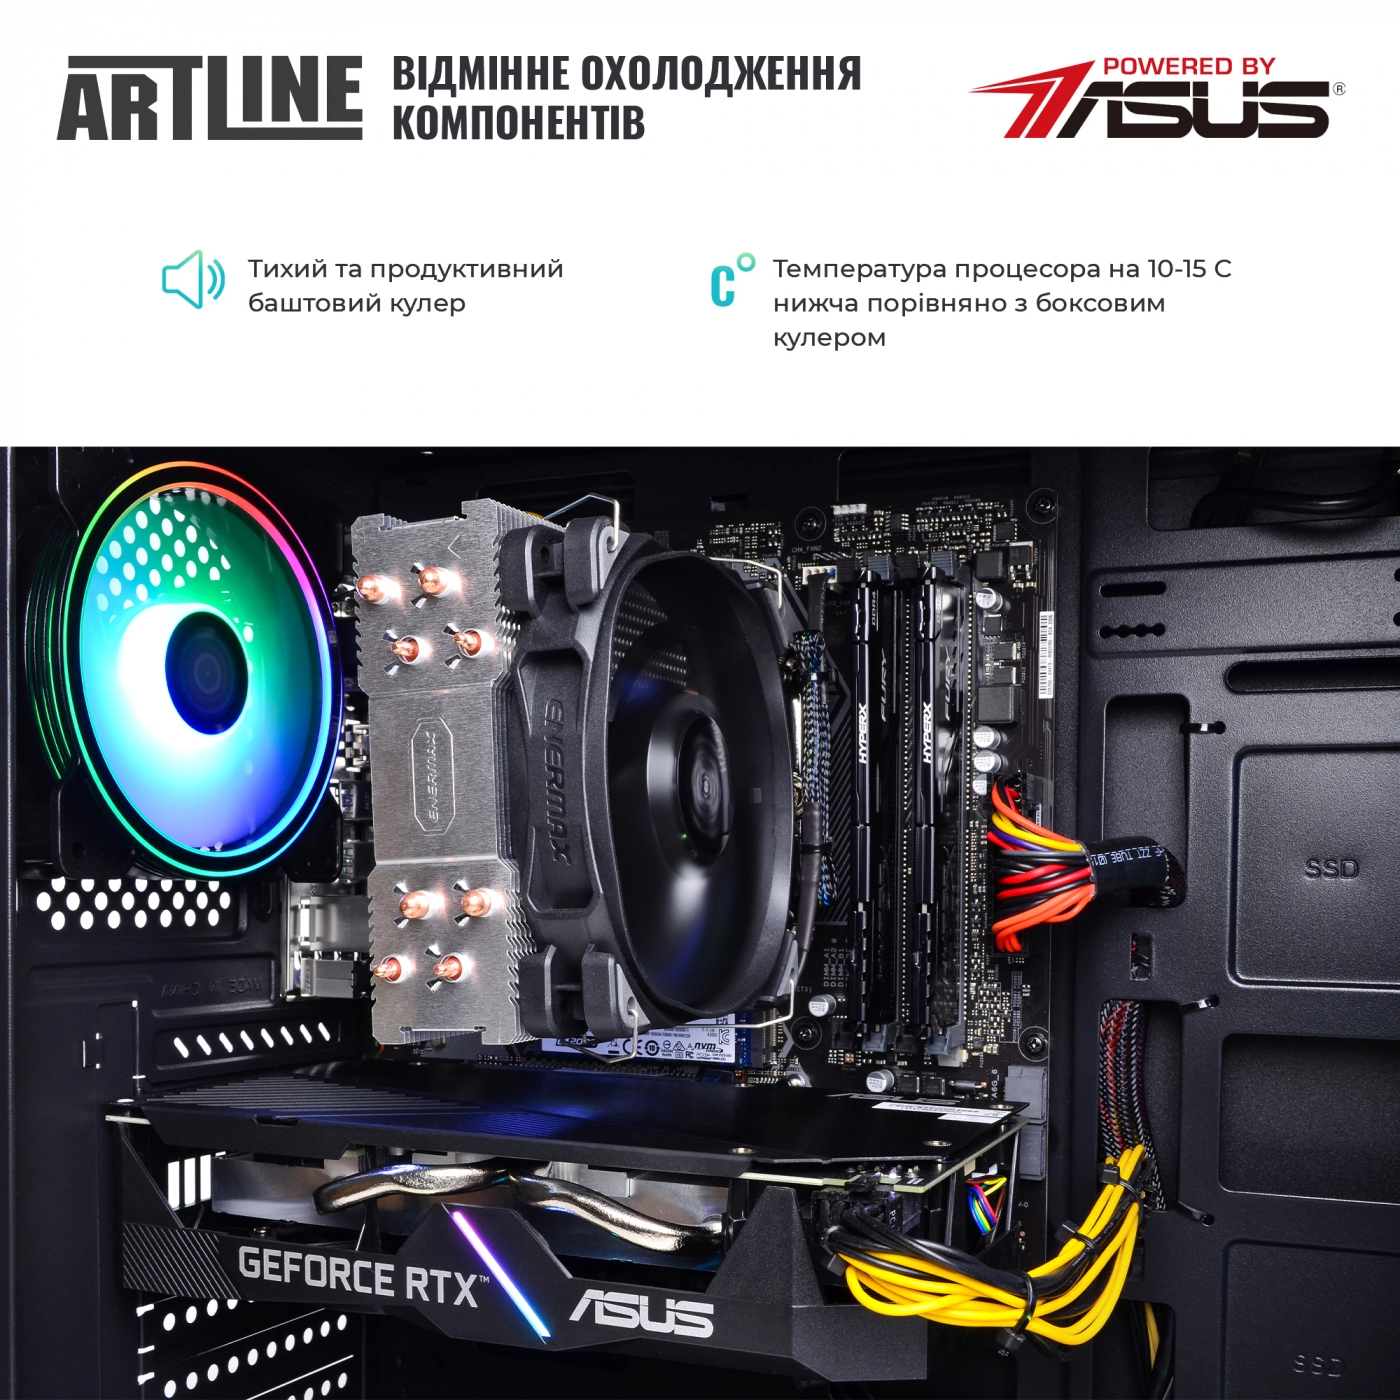 Купить Компьютер ARTLINE Gaming X57v36 - фото 7